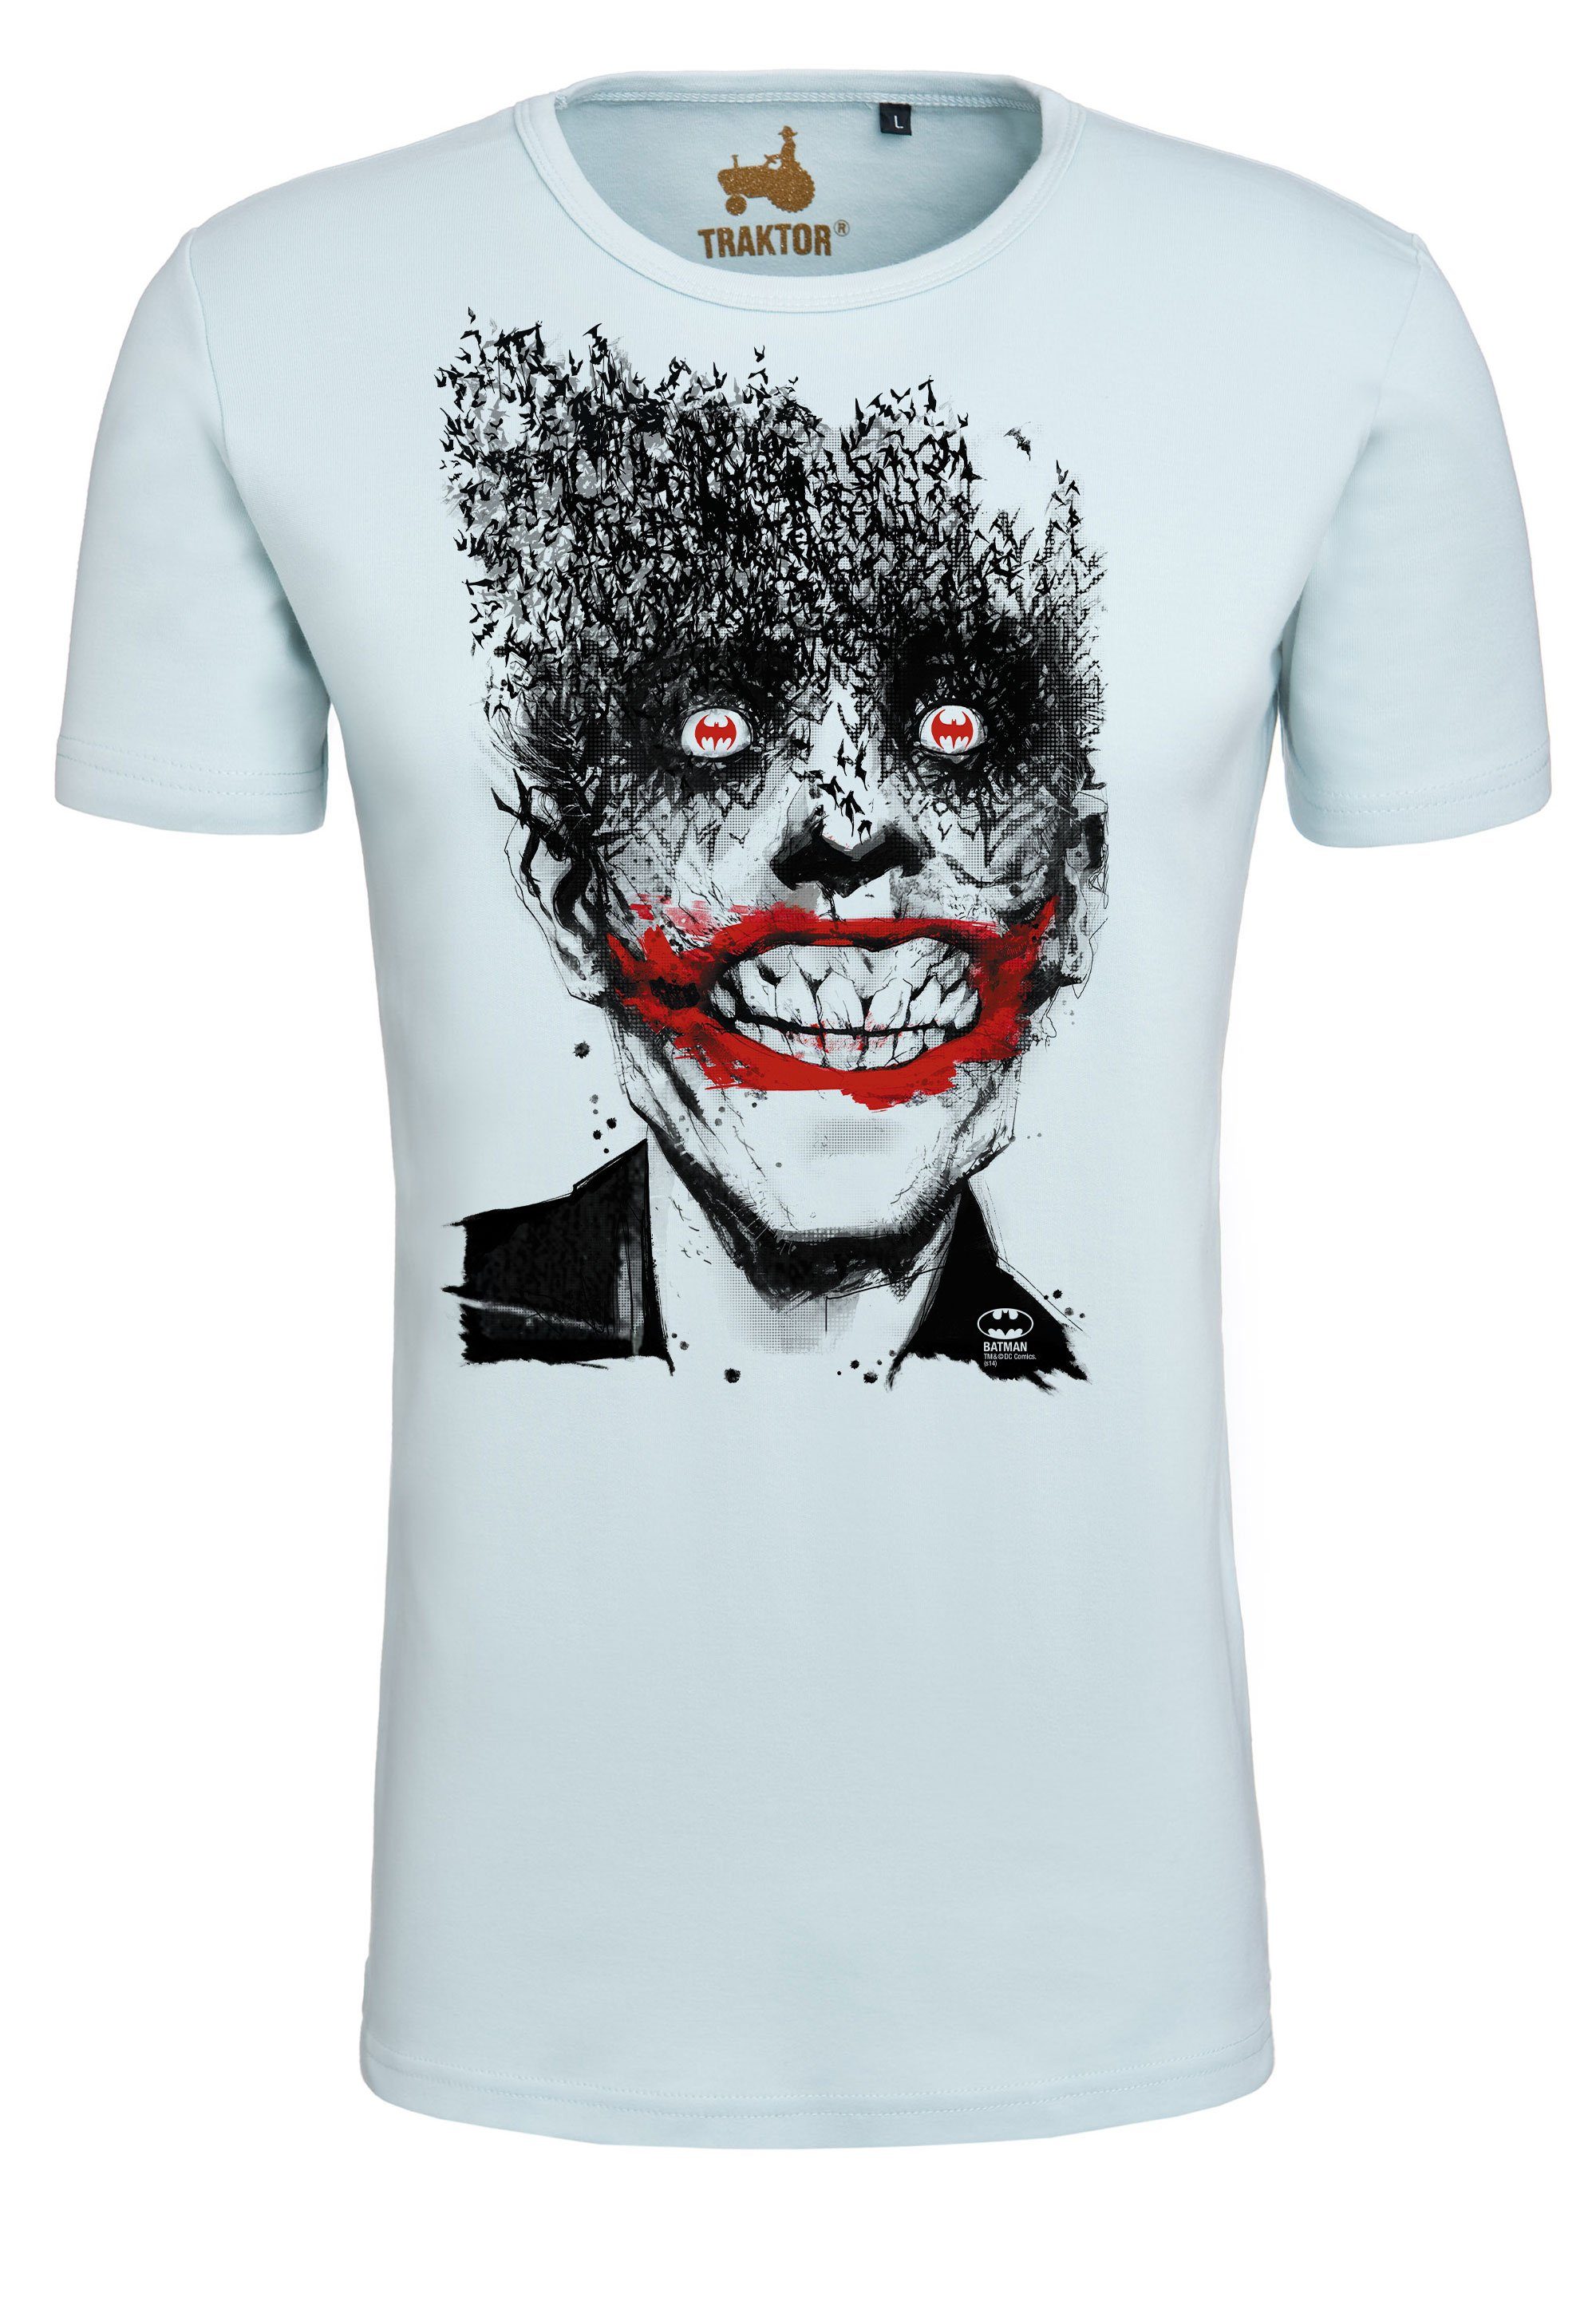 T-Shirt LOGOSHIRT - Superschurken-Print Bats Batman mit Joker trendigem